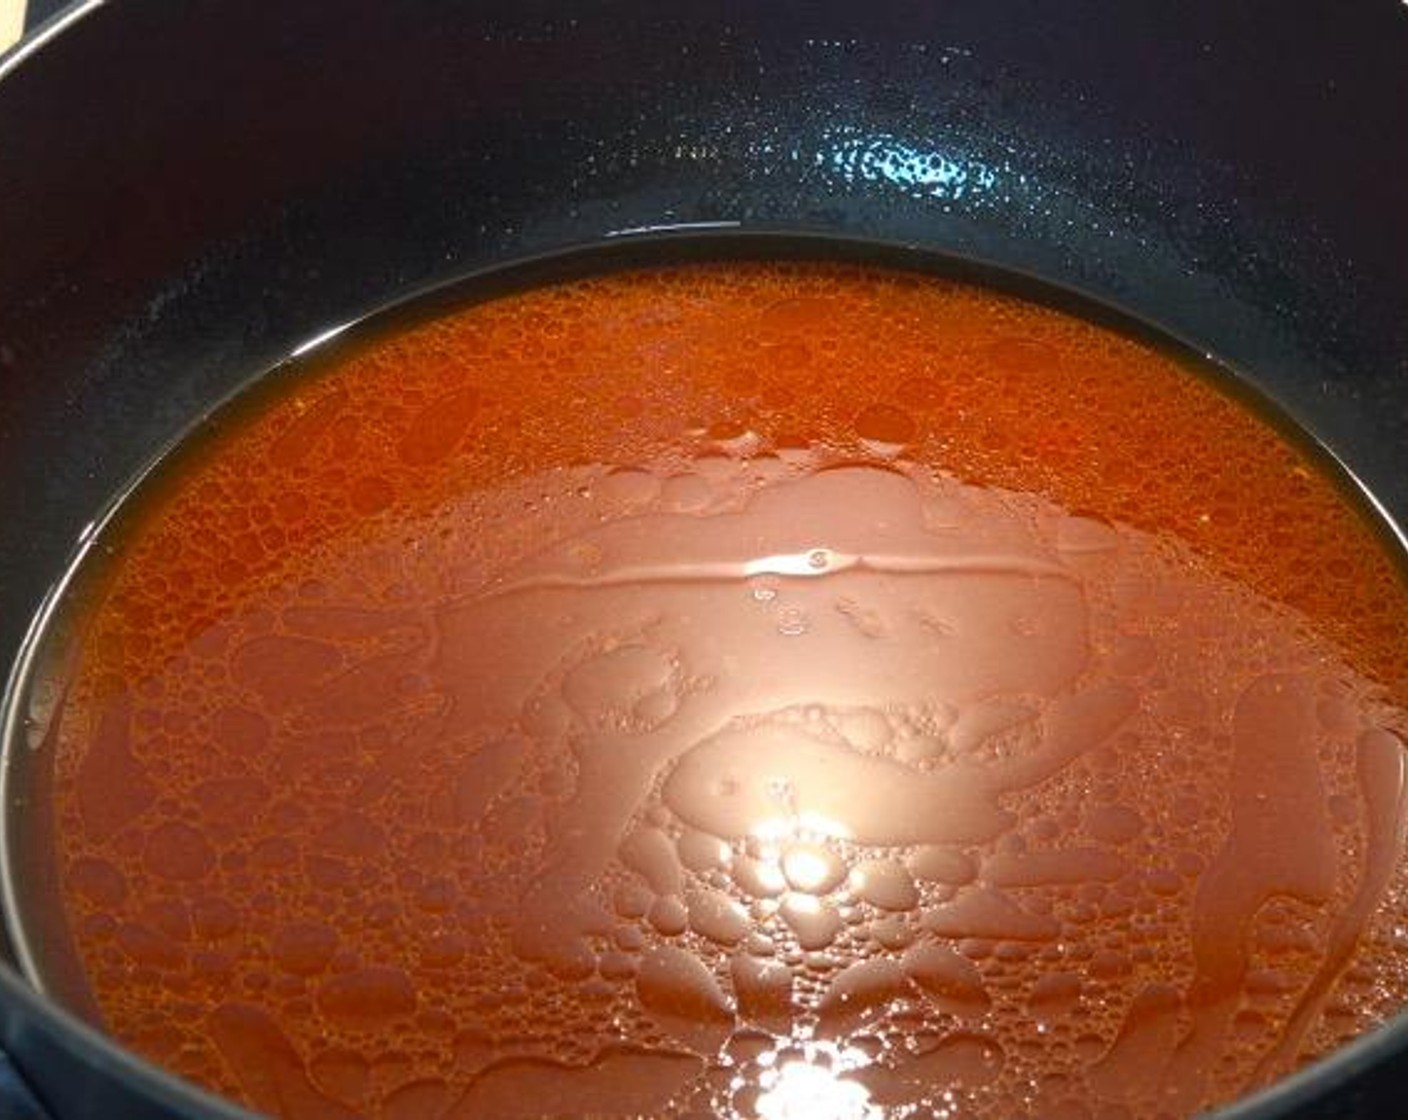 Schritt 1 In einem mittelgroßen Topf Tomatenmark (1 EL), Knoblauch (1 Zehe), Paprikapulver (1 EL), Honig (2 Esslöffel), Olivenöl (2 Esslöffel), Salz (wenig) und Wasser (360 ml) geben und bei mittlerer Hitze erwärmen.